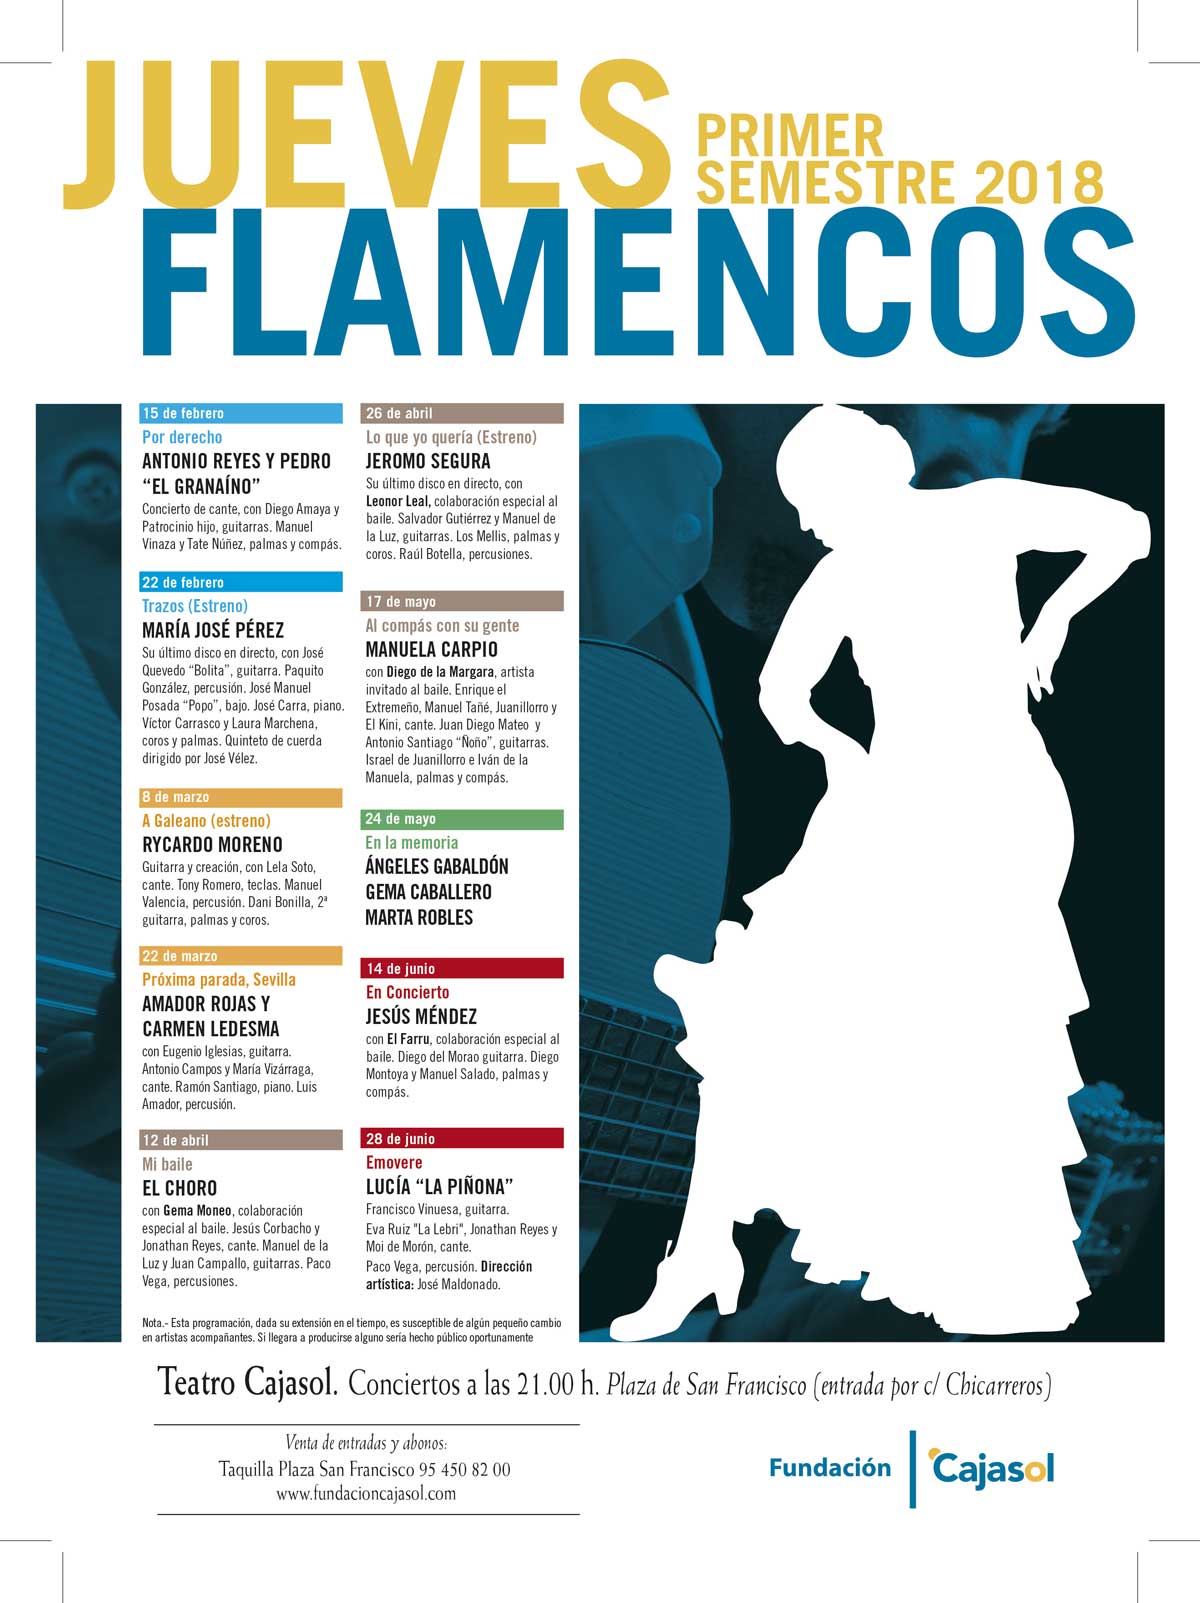 Cartel del ciclo de primavera 2018 en los Jueves Flamencos de la Fundación Cajasol en Sevilla